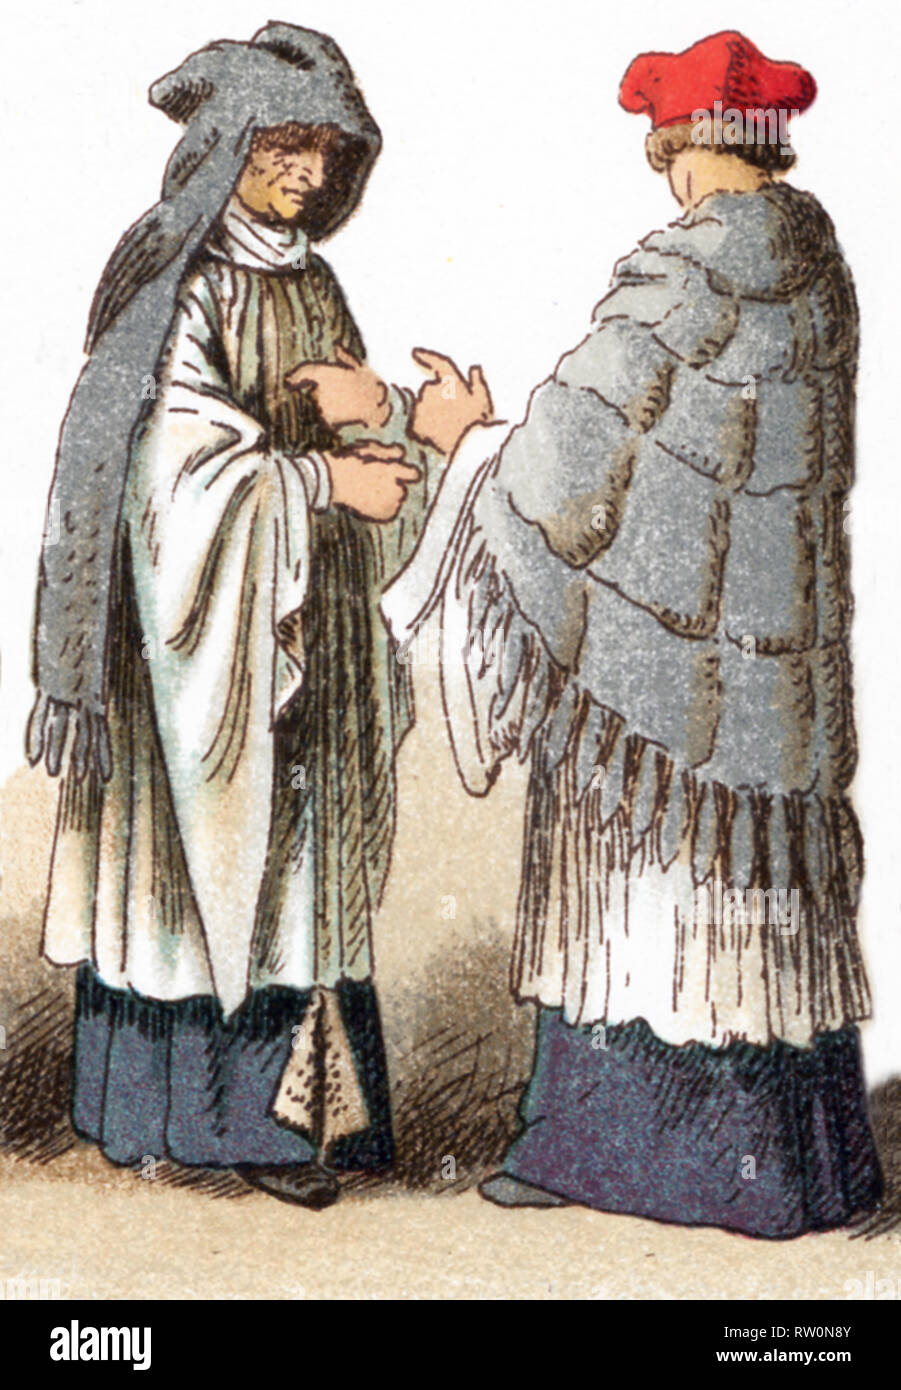 Les illustrations présentées ici illustrent les costumes ecclésiastiques d'un chanoine portant un faire face et amess au 15ème siècle et un canon au 17ème siècle. L'illustration dates à 1882. Banque D'Images